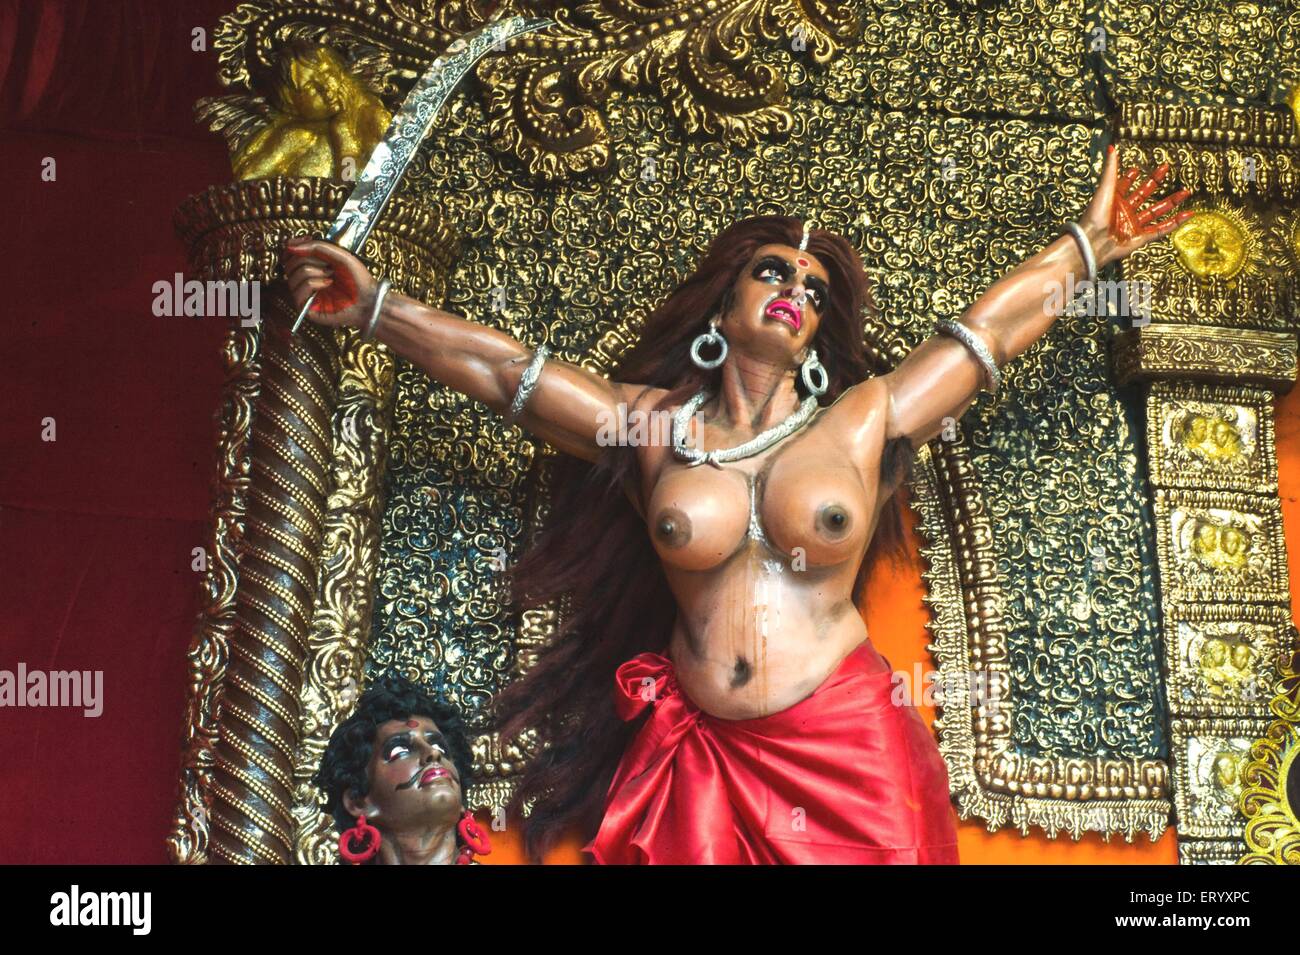 Indian god porn